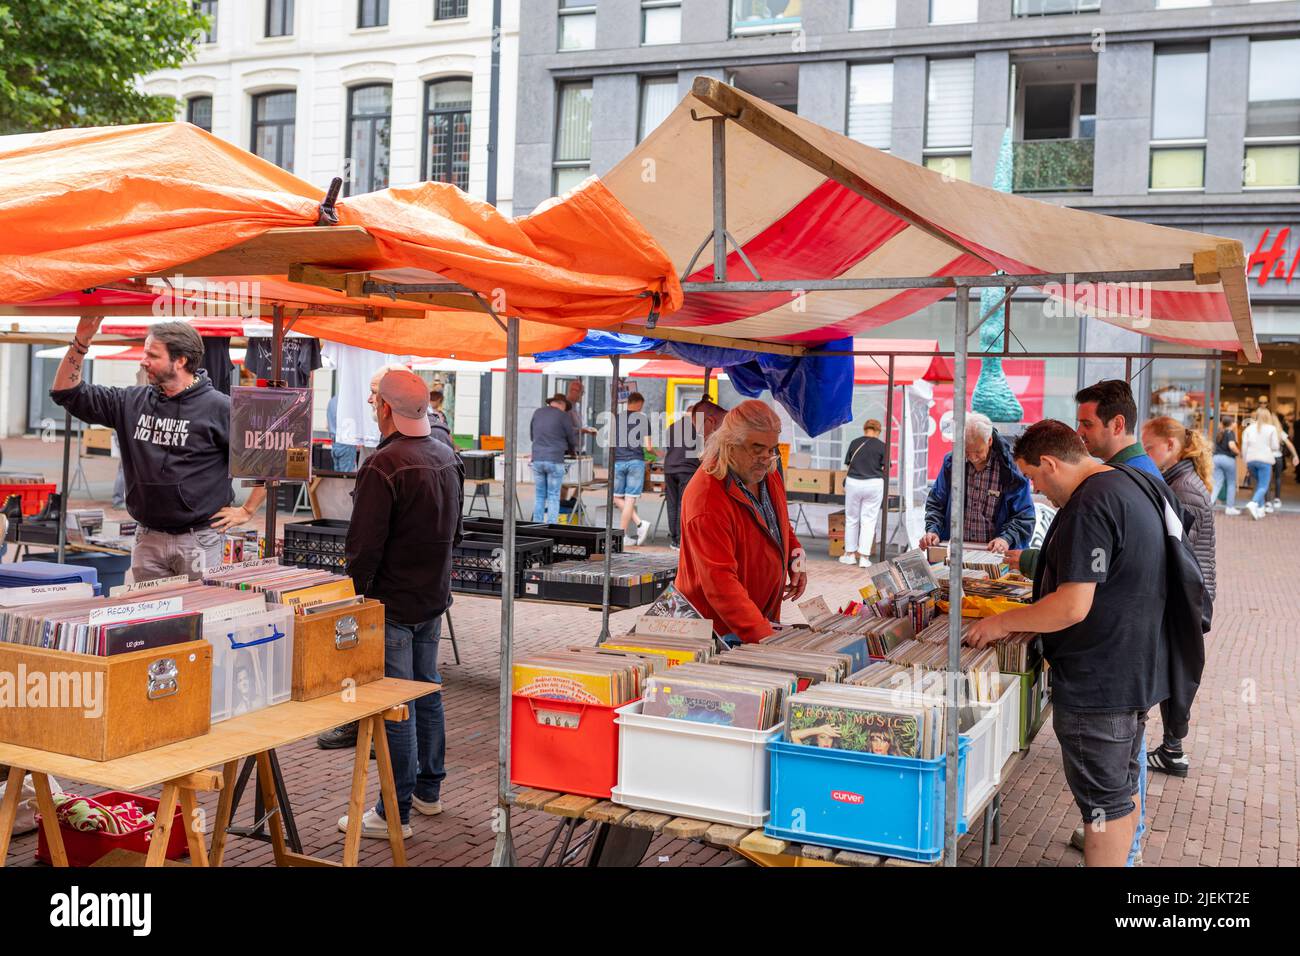 People at second hand LP enregistre le marché à Helmond, pays-bas Banque D'Images